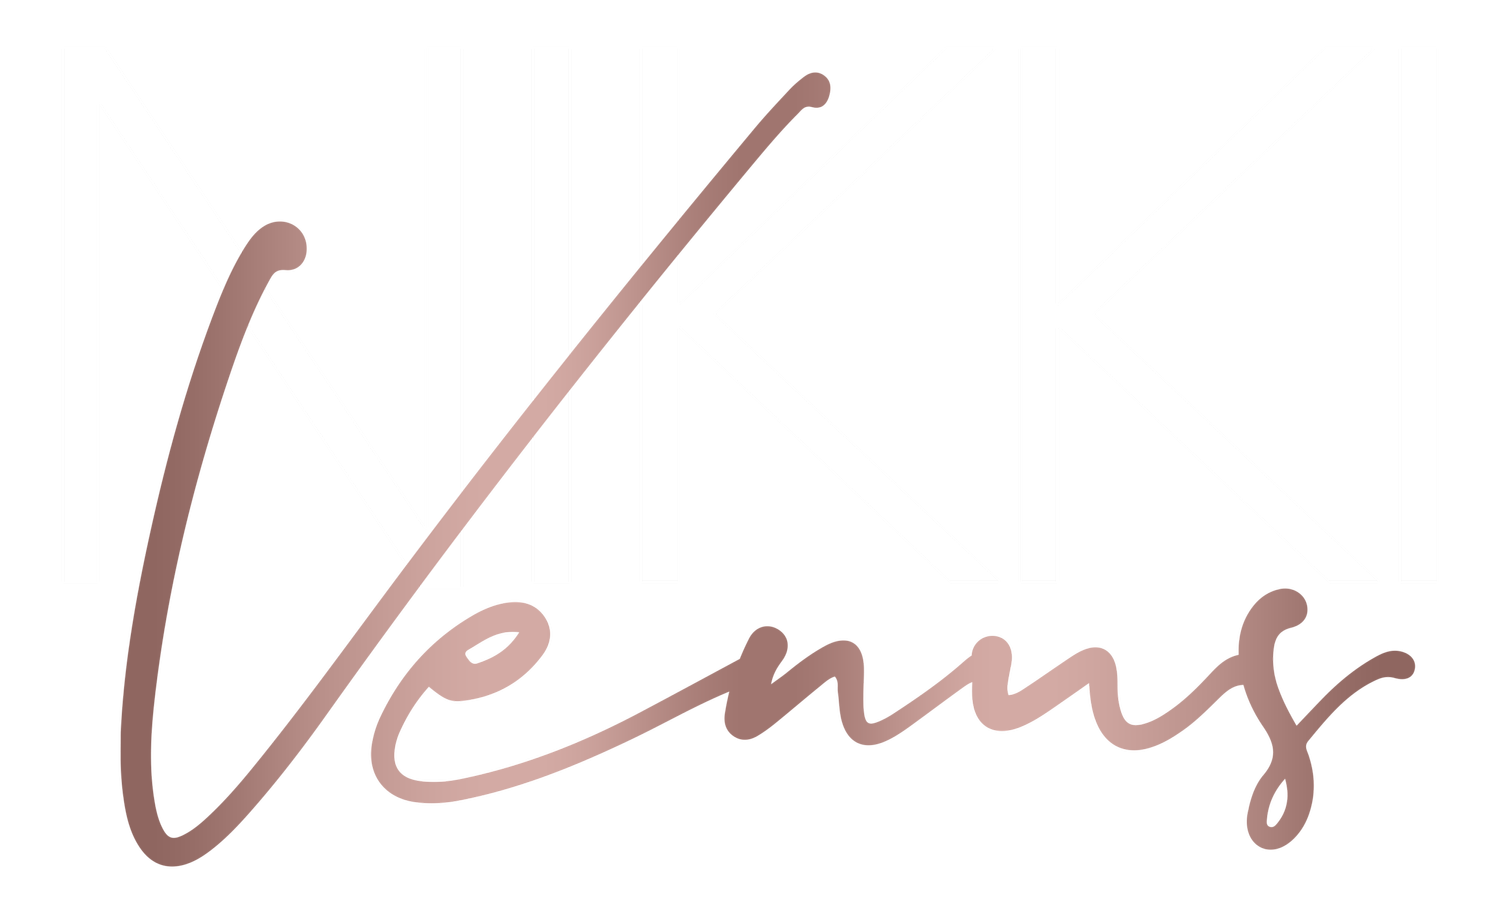 Nikki Venus &amp; Company